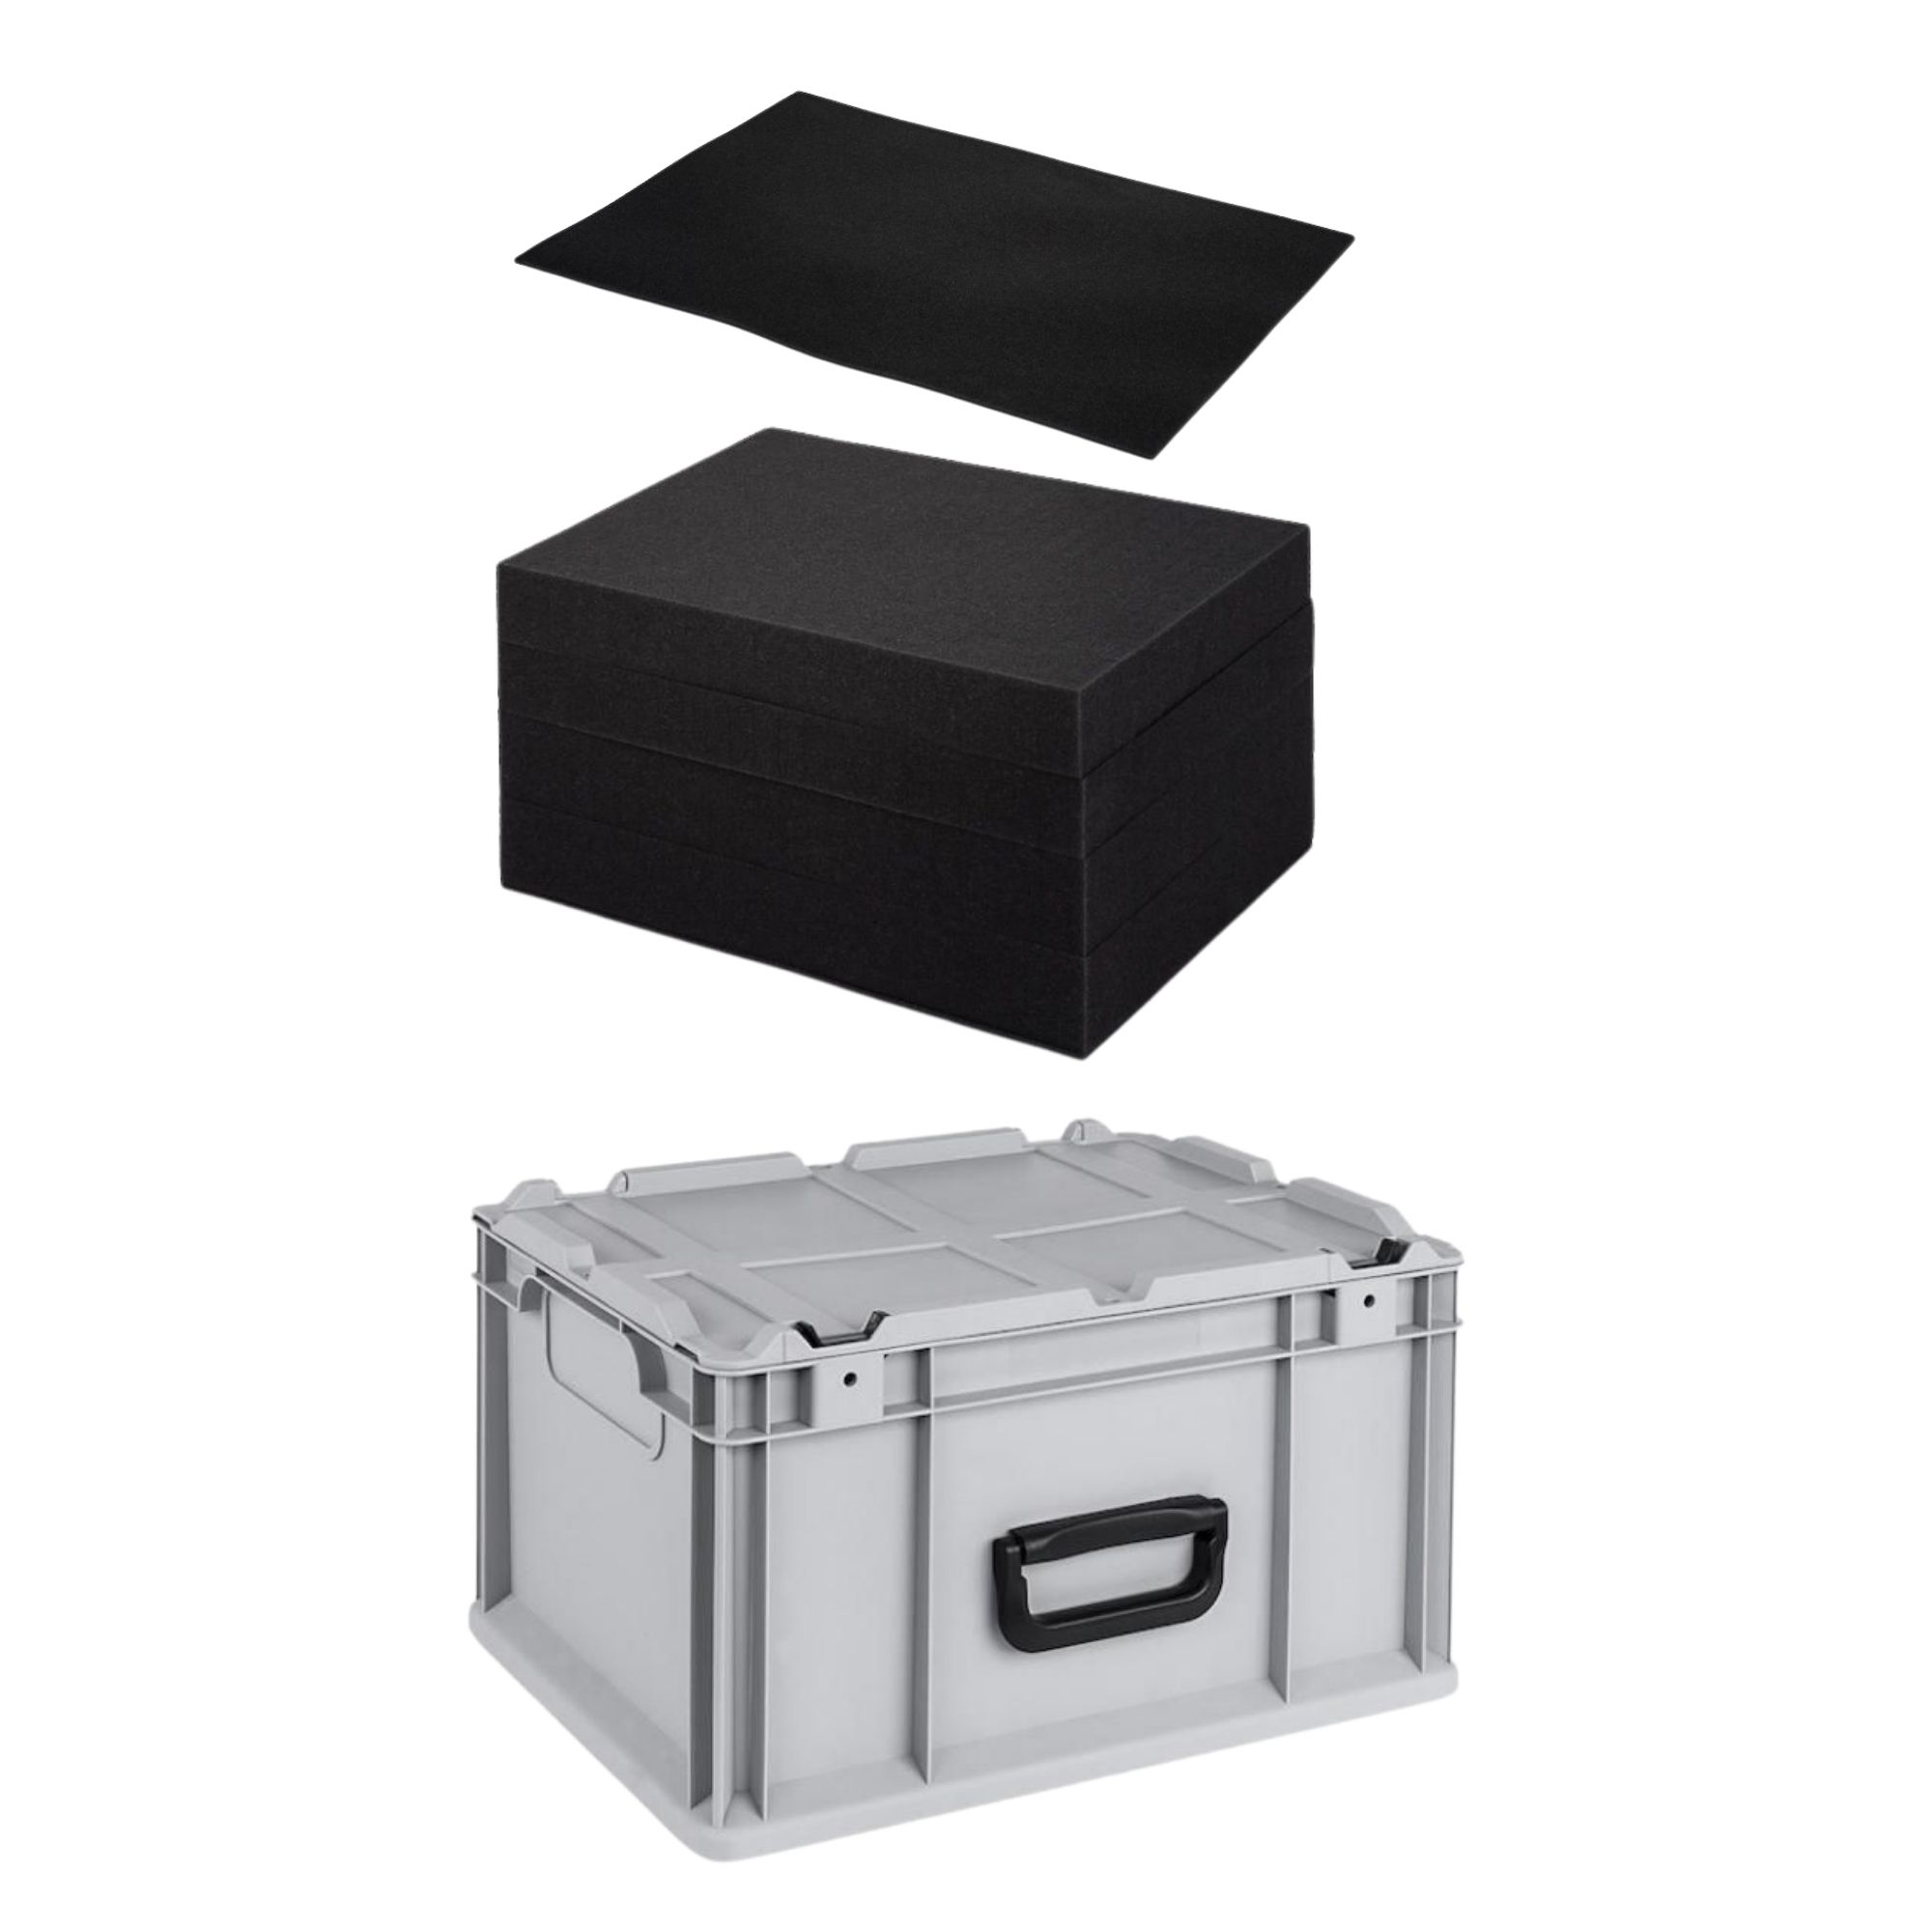 Eurobox NextGen Portable mit Rasterschaumstoff & Schaumstoffeinlage | HxBxT 23,5x30x40cm | 20 Liter | Eurobehälter, Transportbox, Transportbehälter, Stapelbehälter